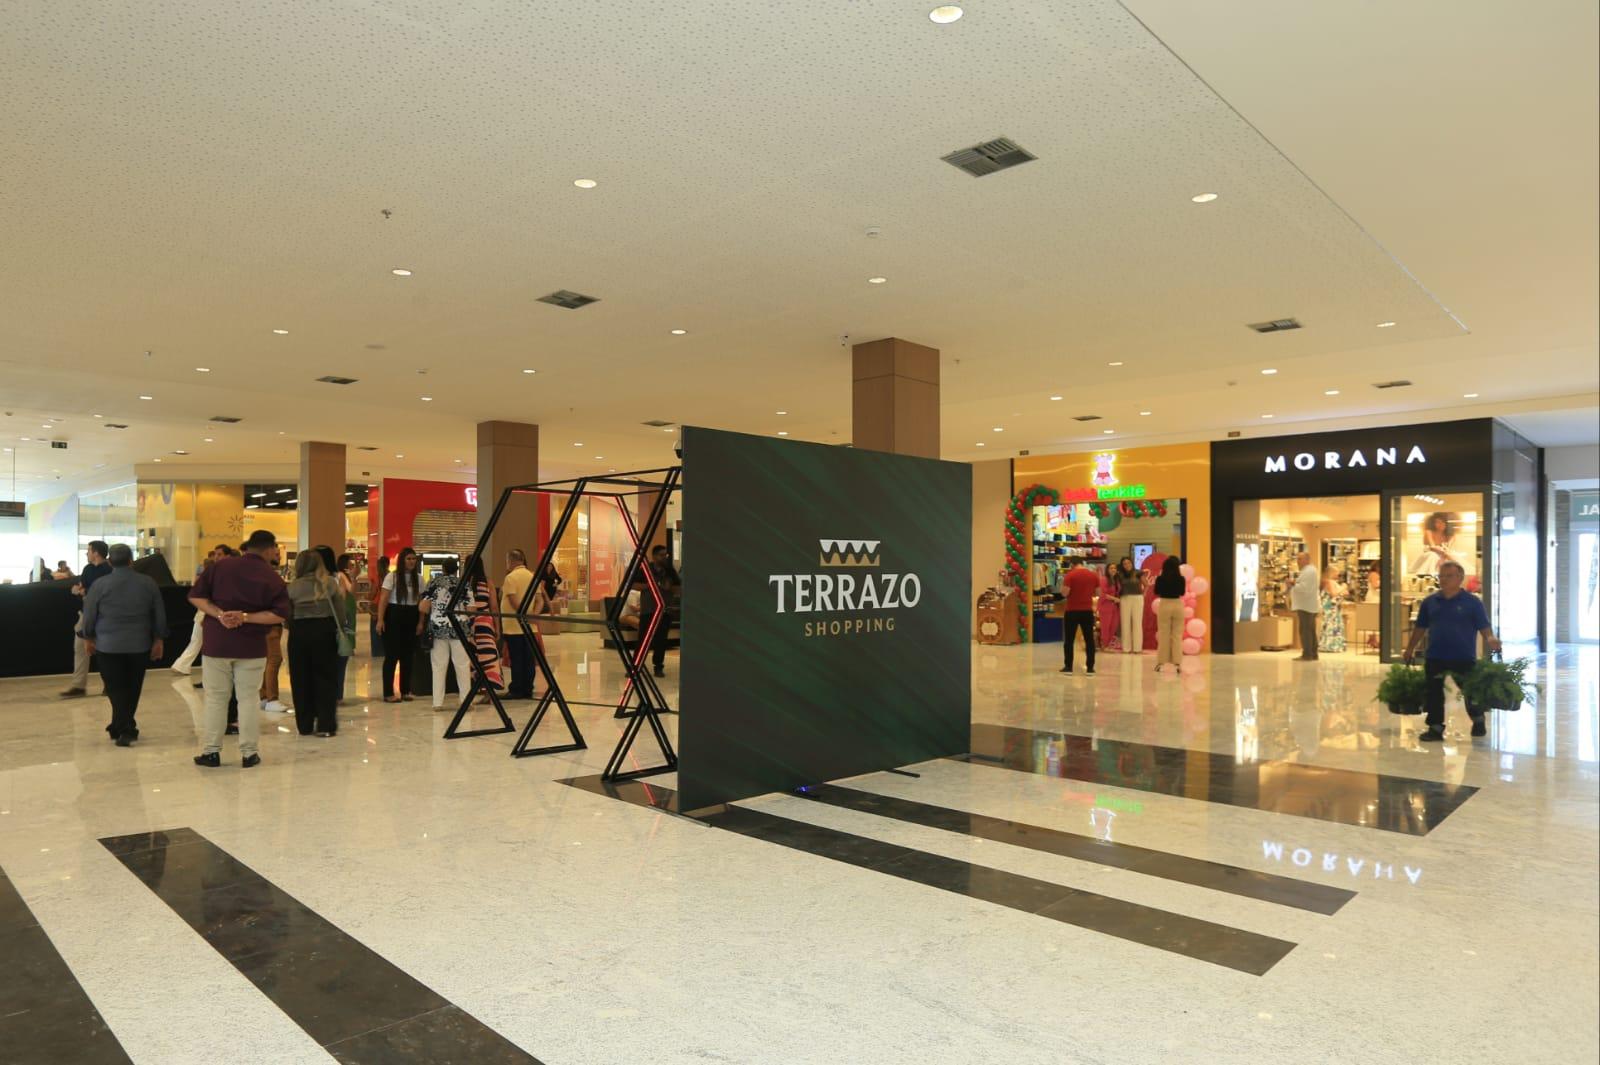 Foto que contém o Terrazo Shopping